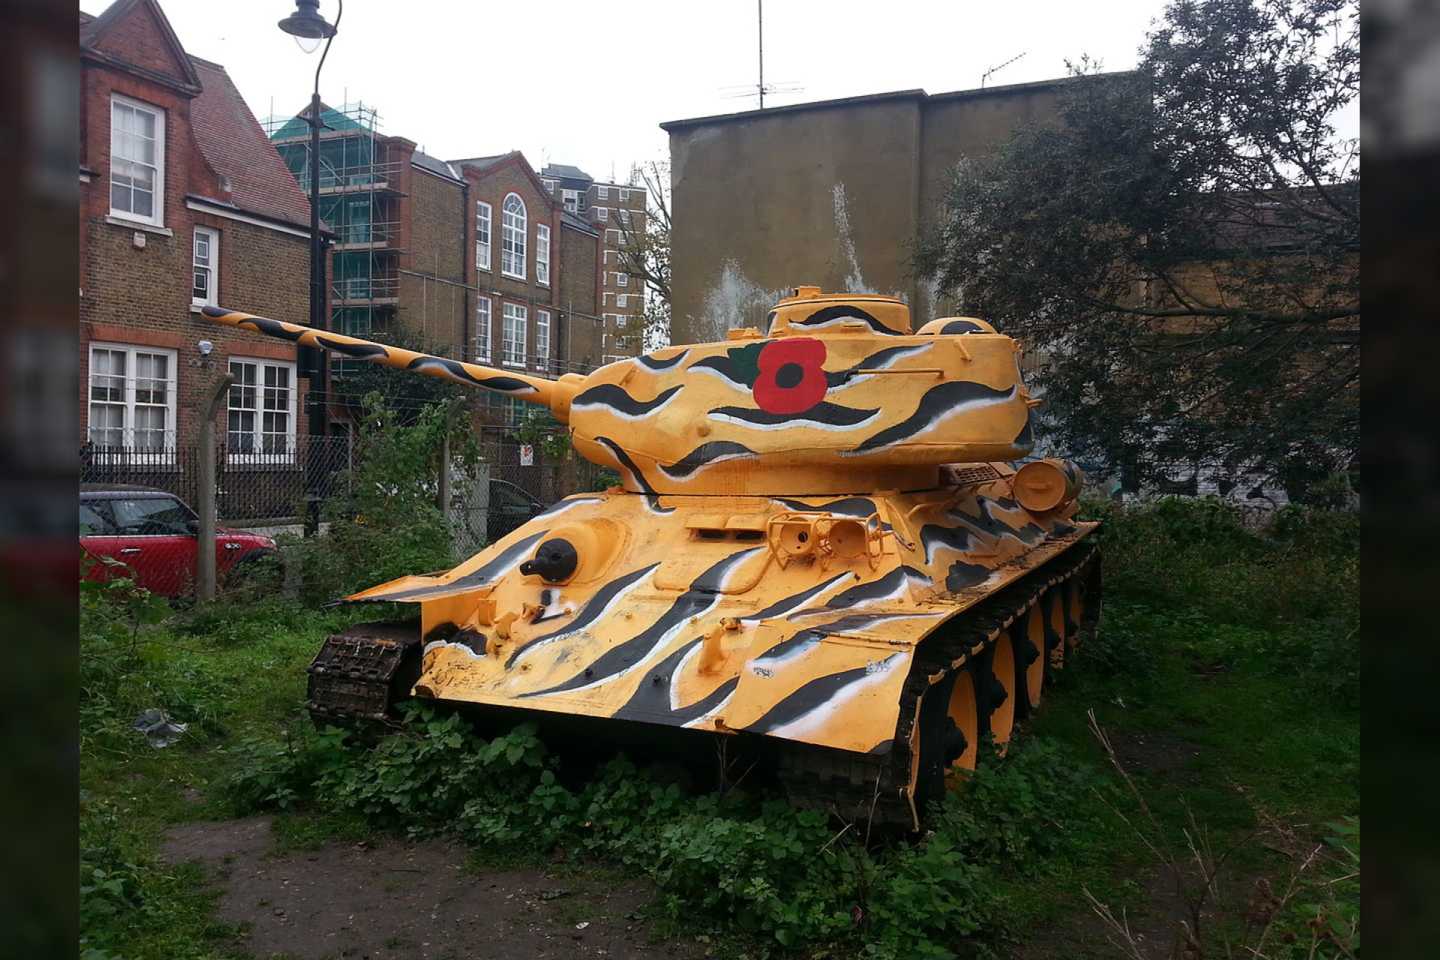  Šis T-34 tankas stovi dabar vadinamuosiuose Stompie soduose.<br> Thomas D. Stewart nuotr.